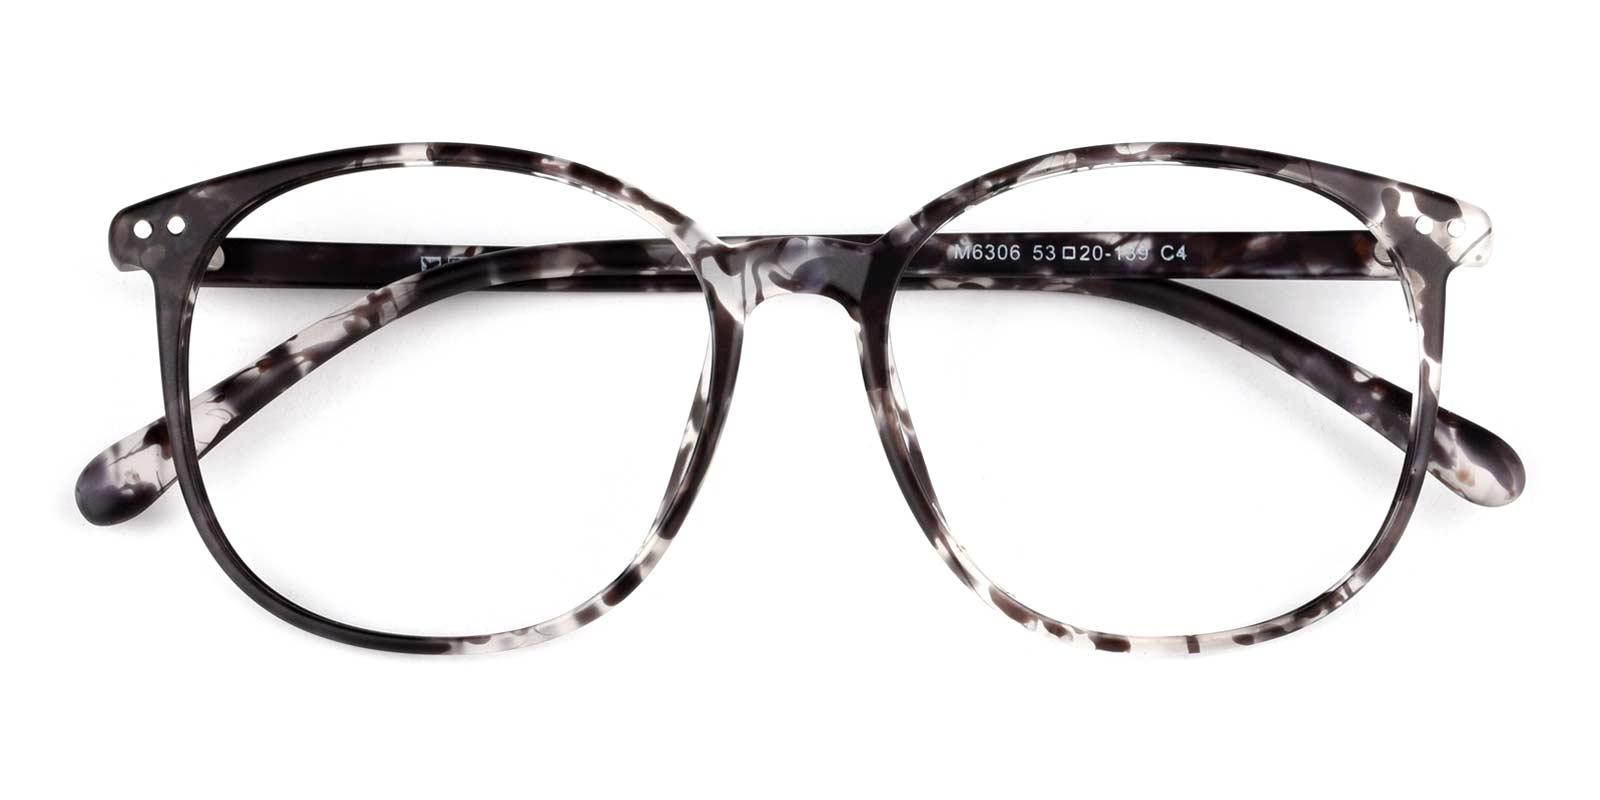 Julian-Pattern-Round / Square-TR-Eyeglasses-detail